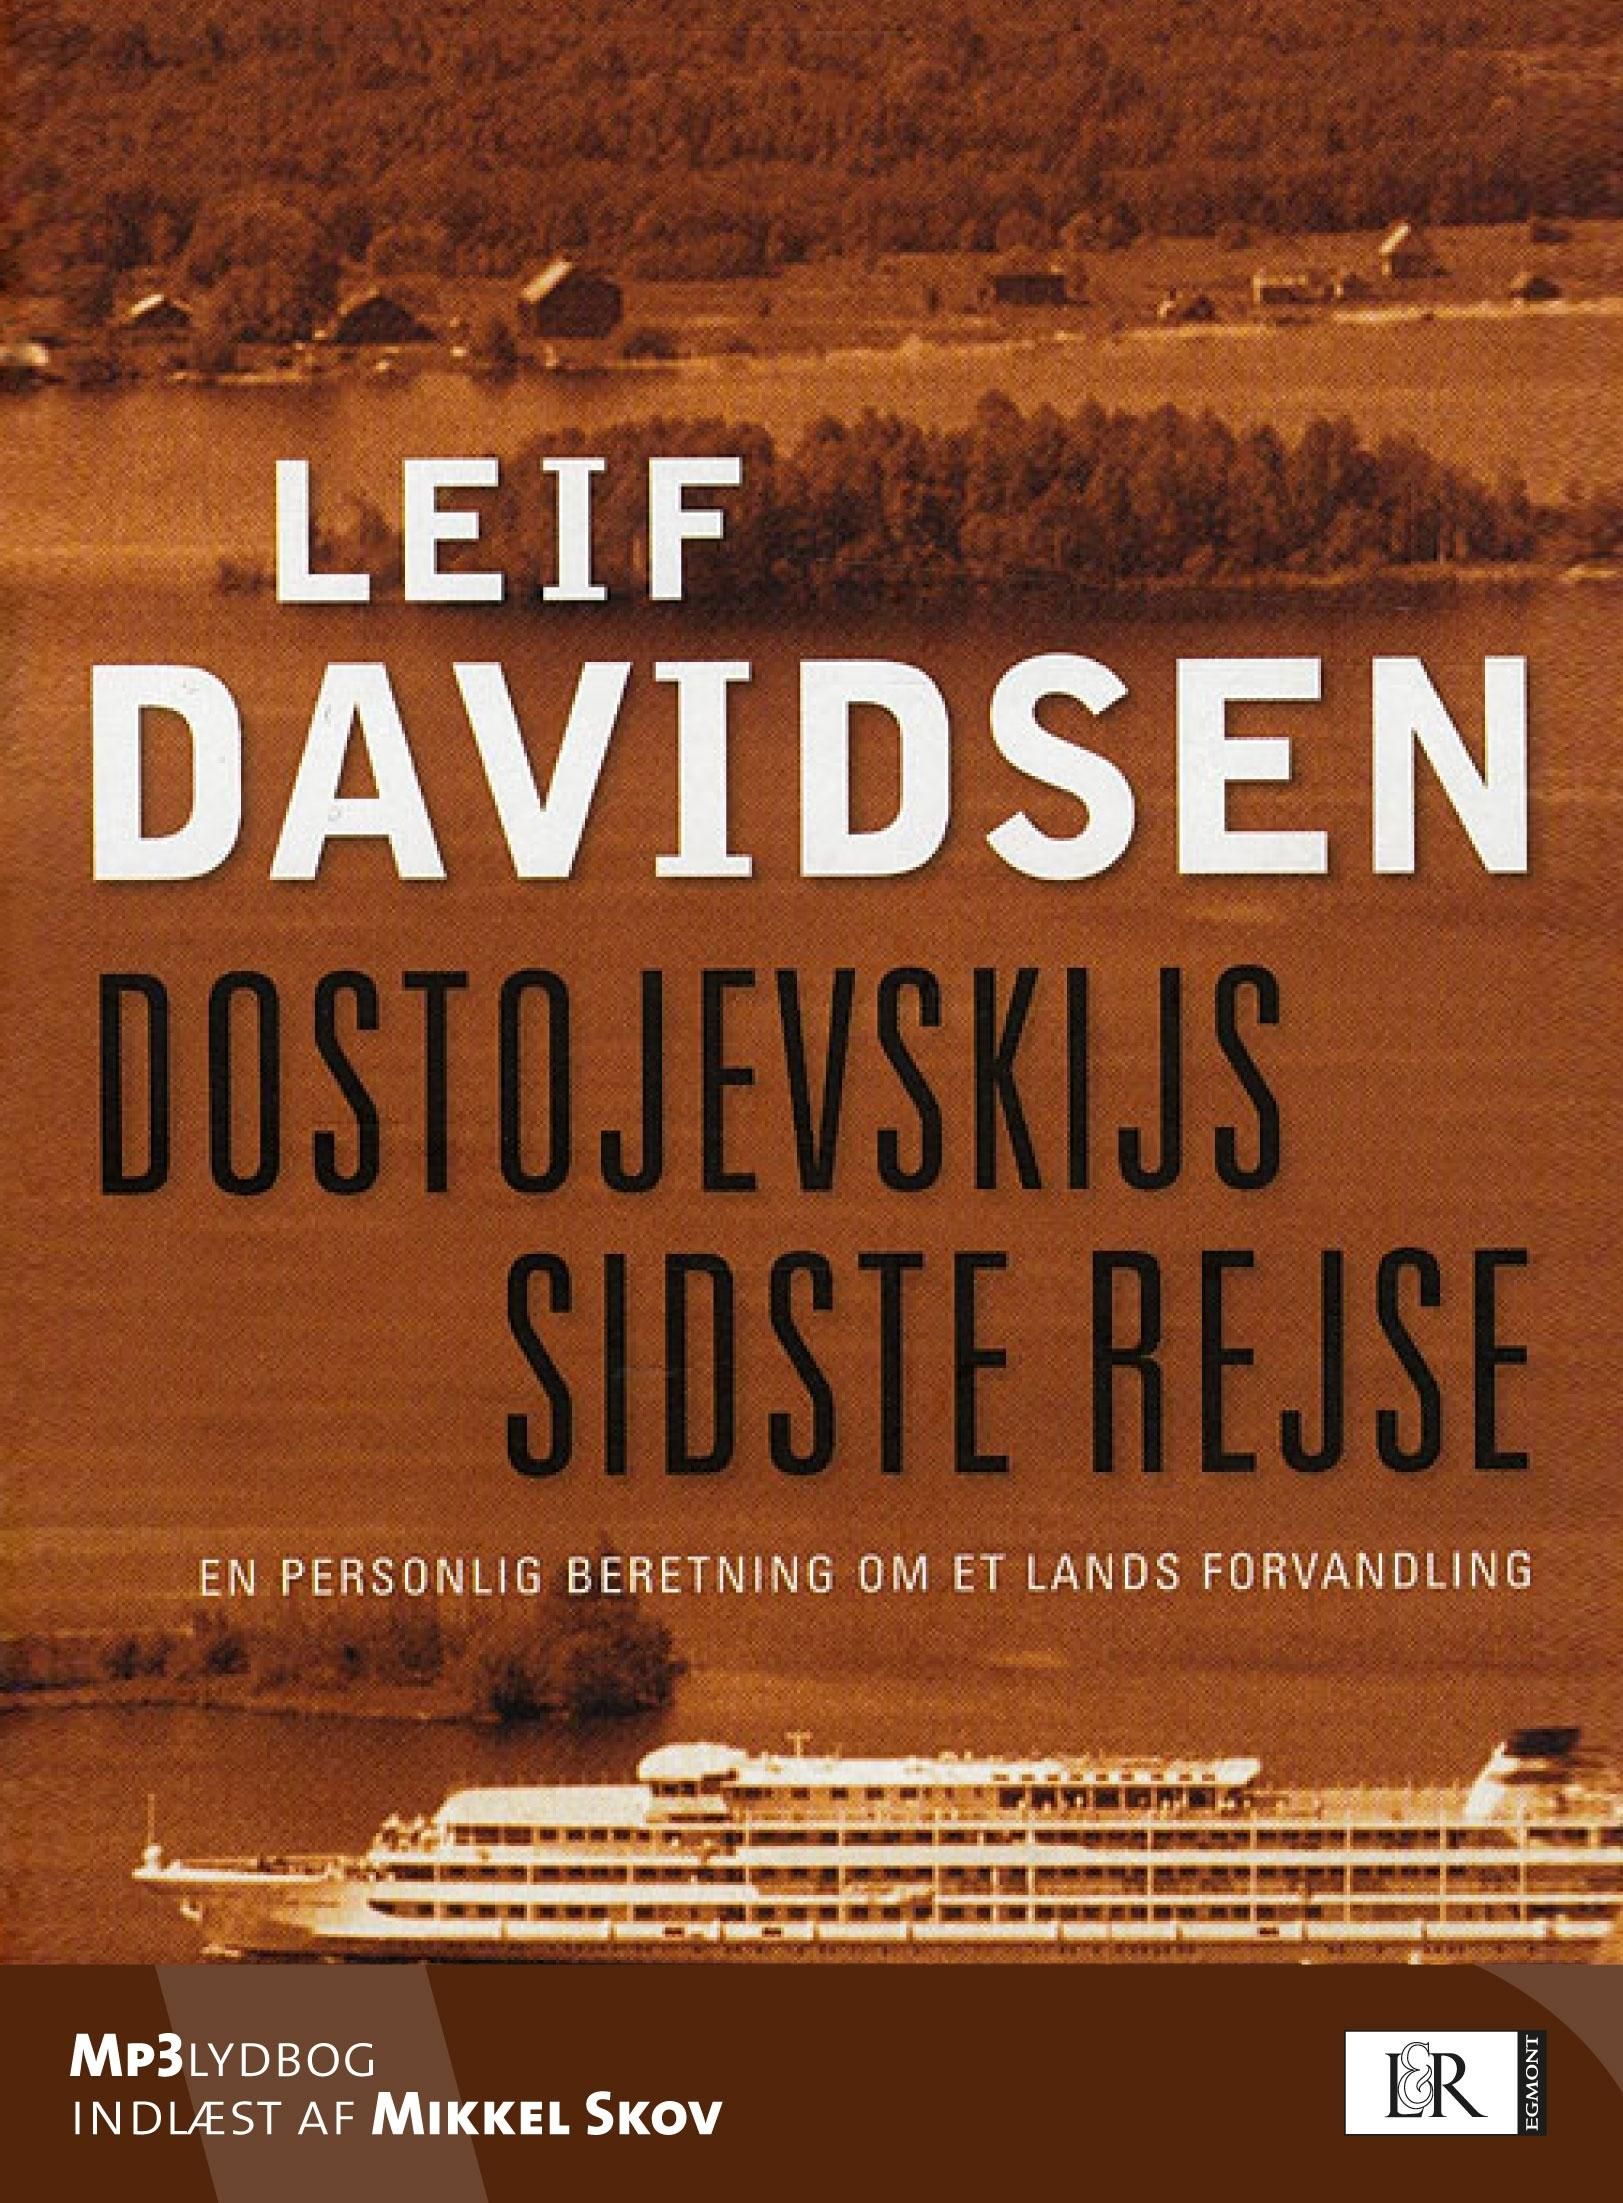 Dostojevskijs sidste rejse. En personlig beretning om et lands forvandling, lydbog af Leif Davidsen